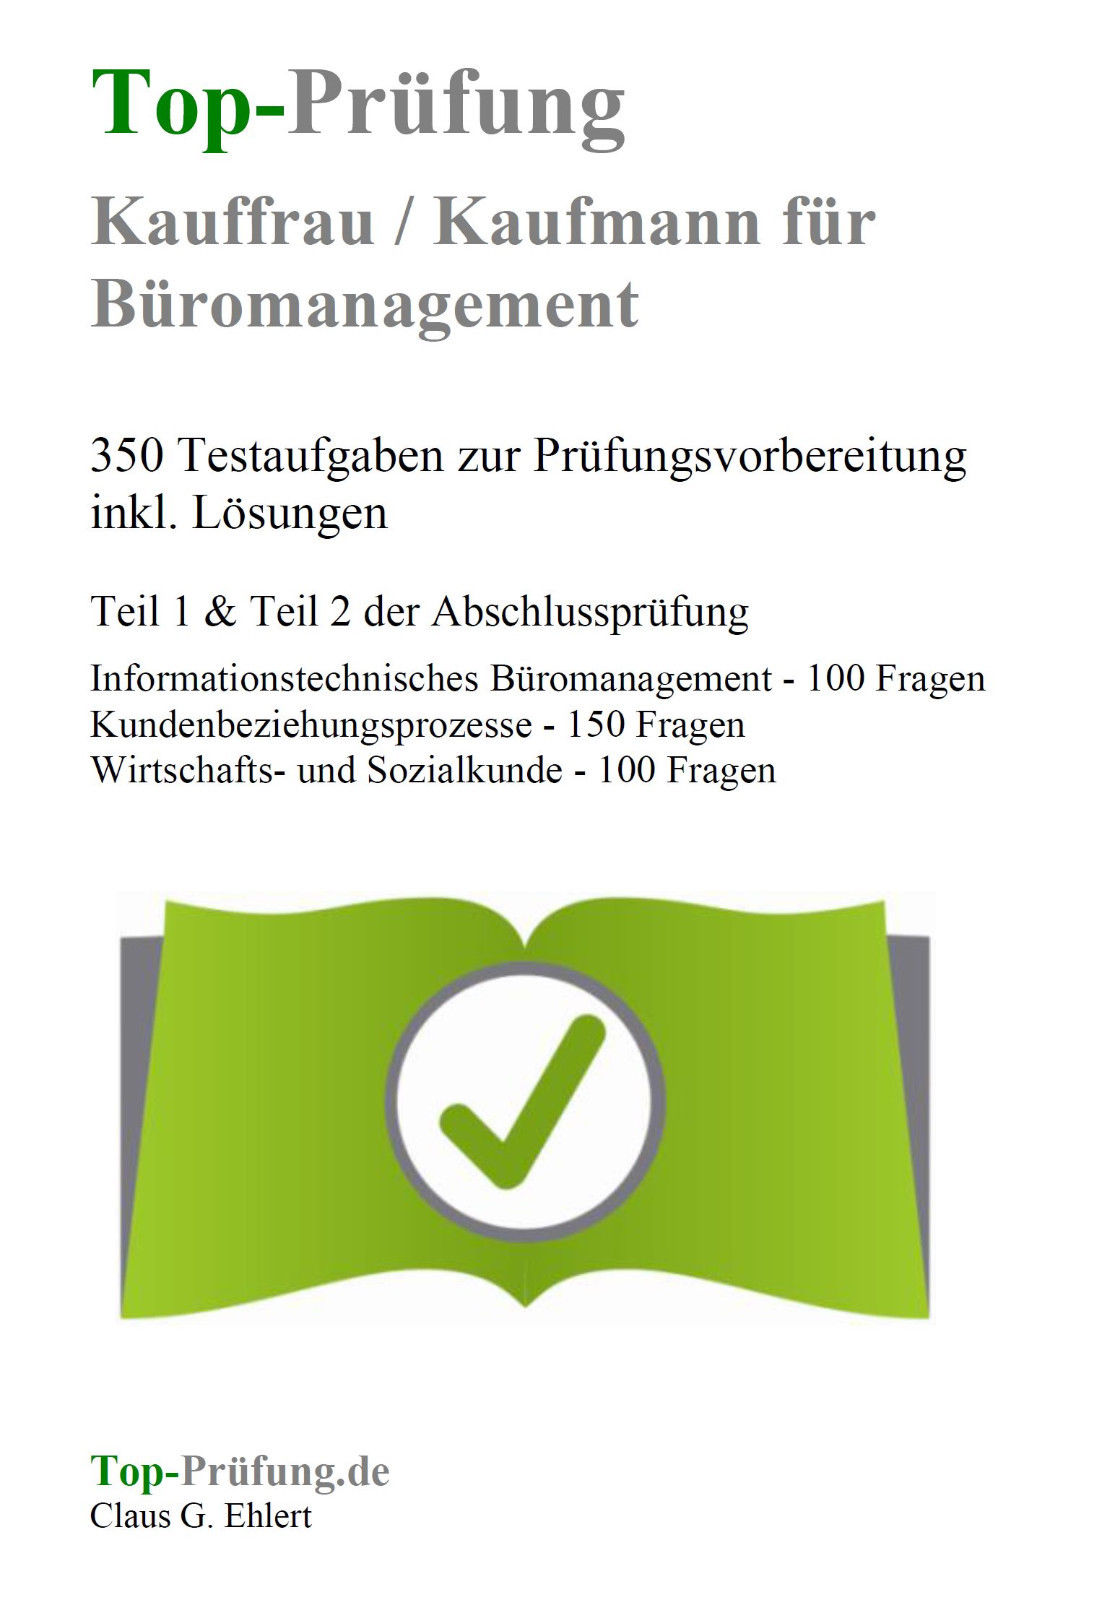 Kaufmann / Kauffrau für Büromanagement - 350 Prüfungsfragen inkl. Lösungen